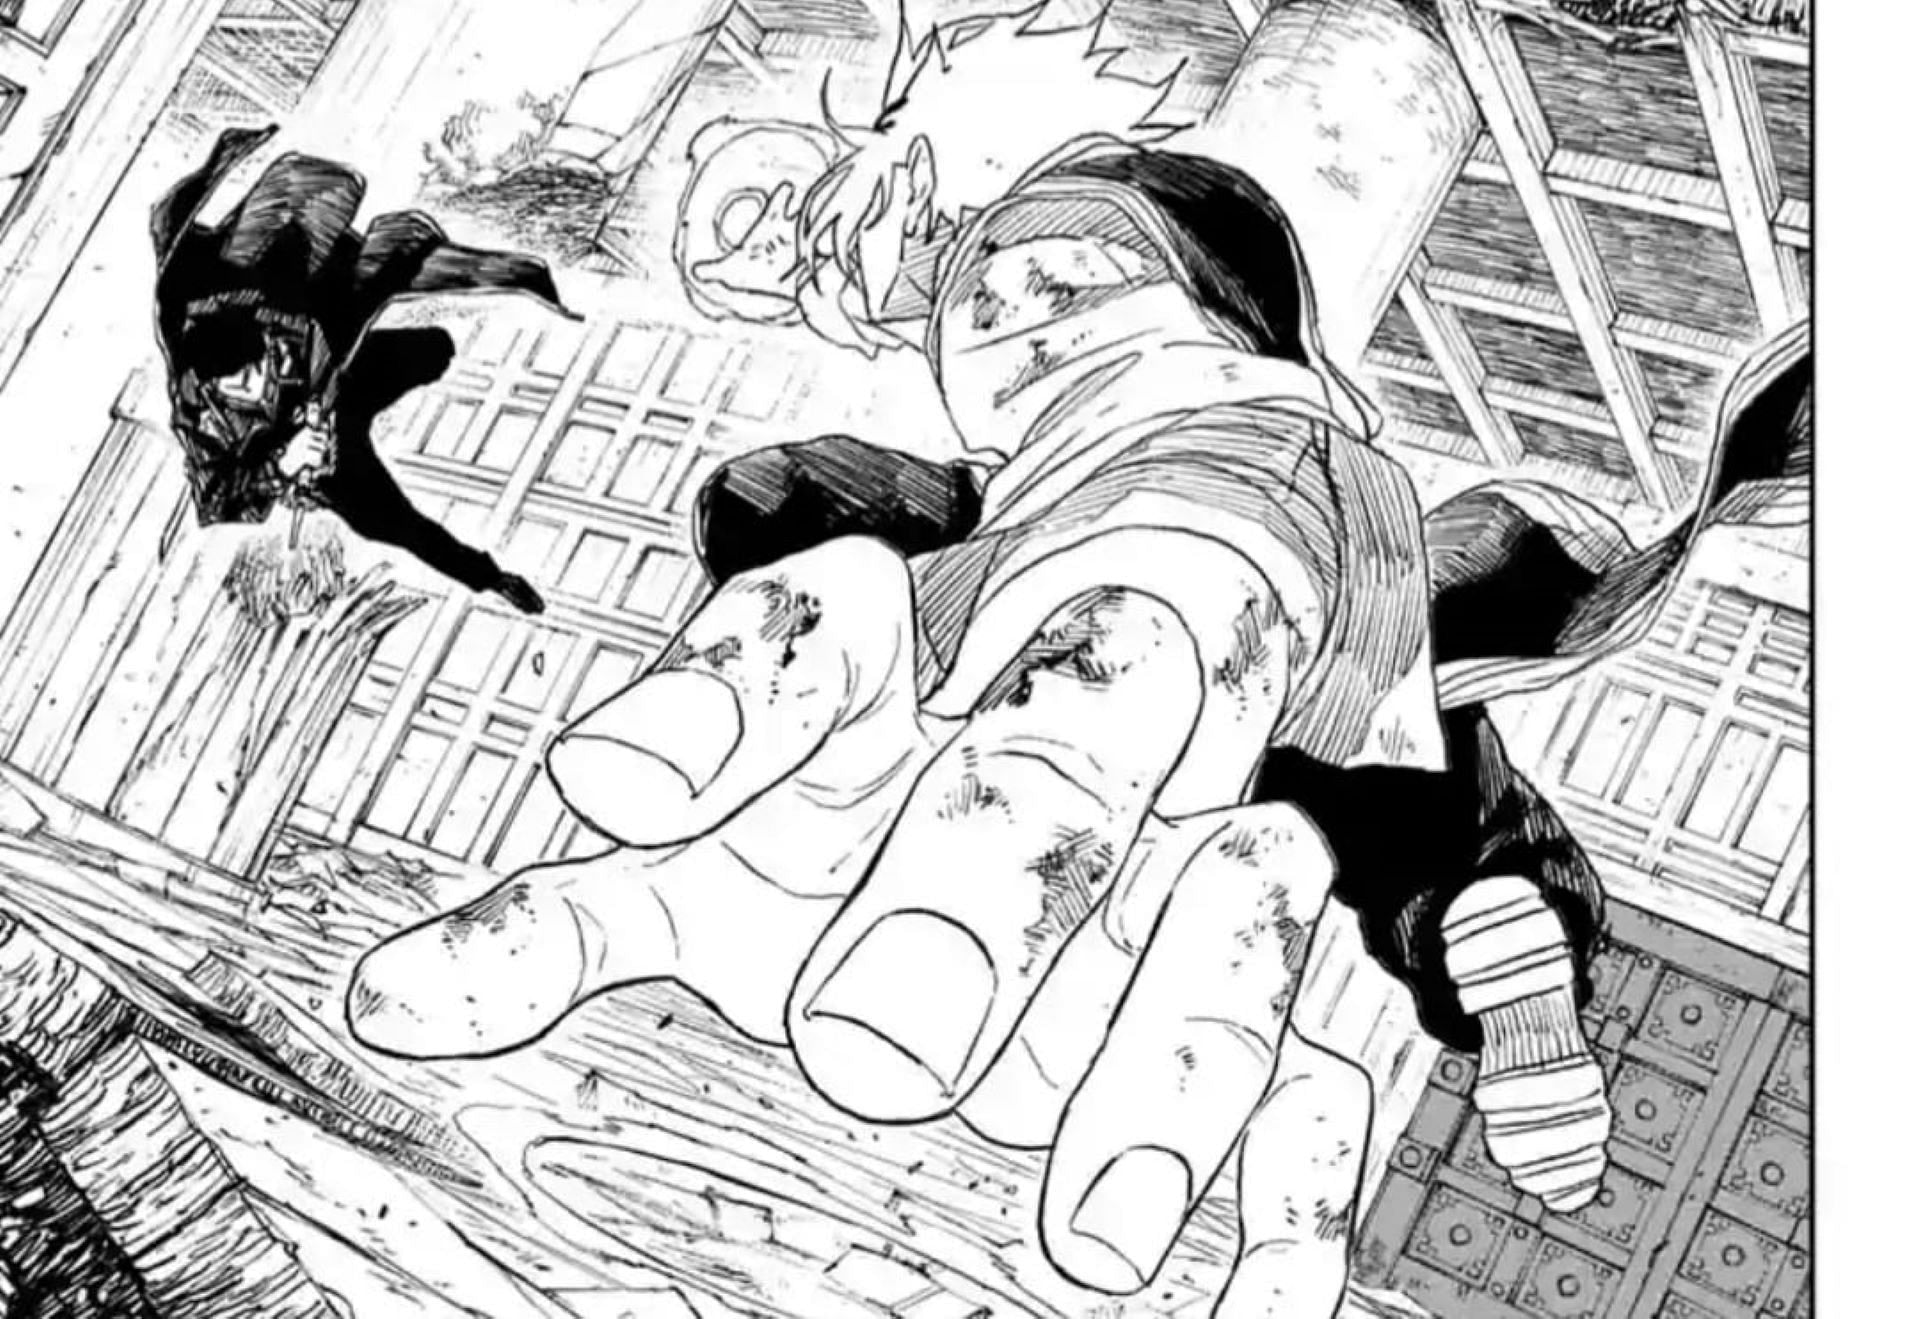 Chihiro vs Tenri in chapter 36 (Image via Takeru Hokazono/Shueisha)